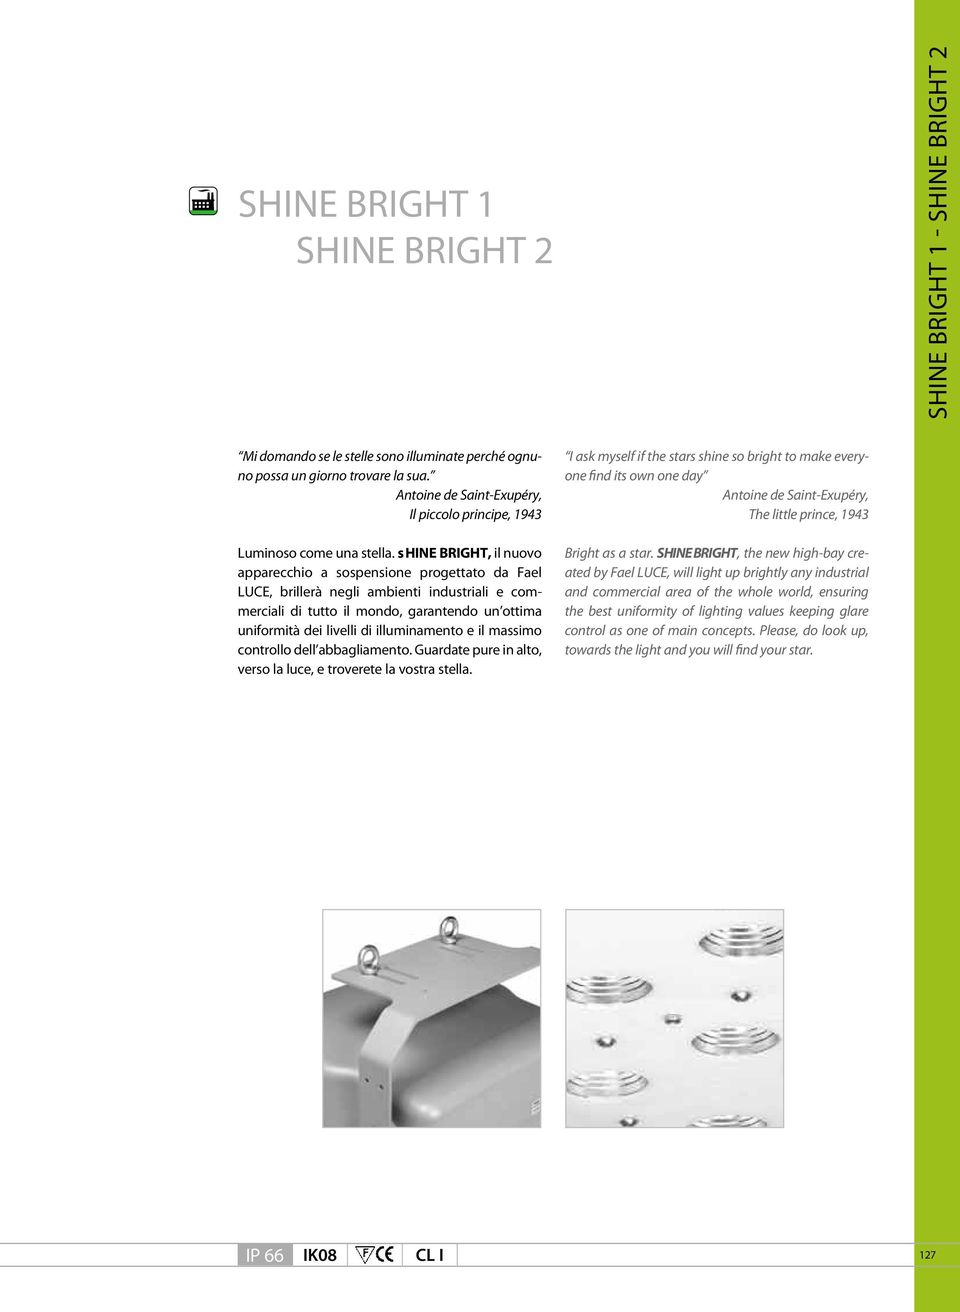 shine BRIGHT, il nuovo apparecchio a sospensione progettato da Fael LUCE, brillerà negli ambienti industriali e commerciali di tutto il mondo, garantendo un ottima uniformità dei livelli di